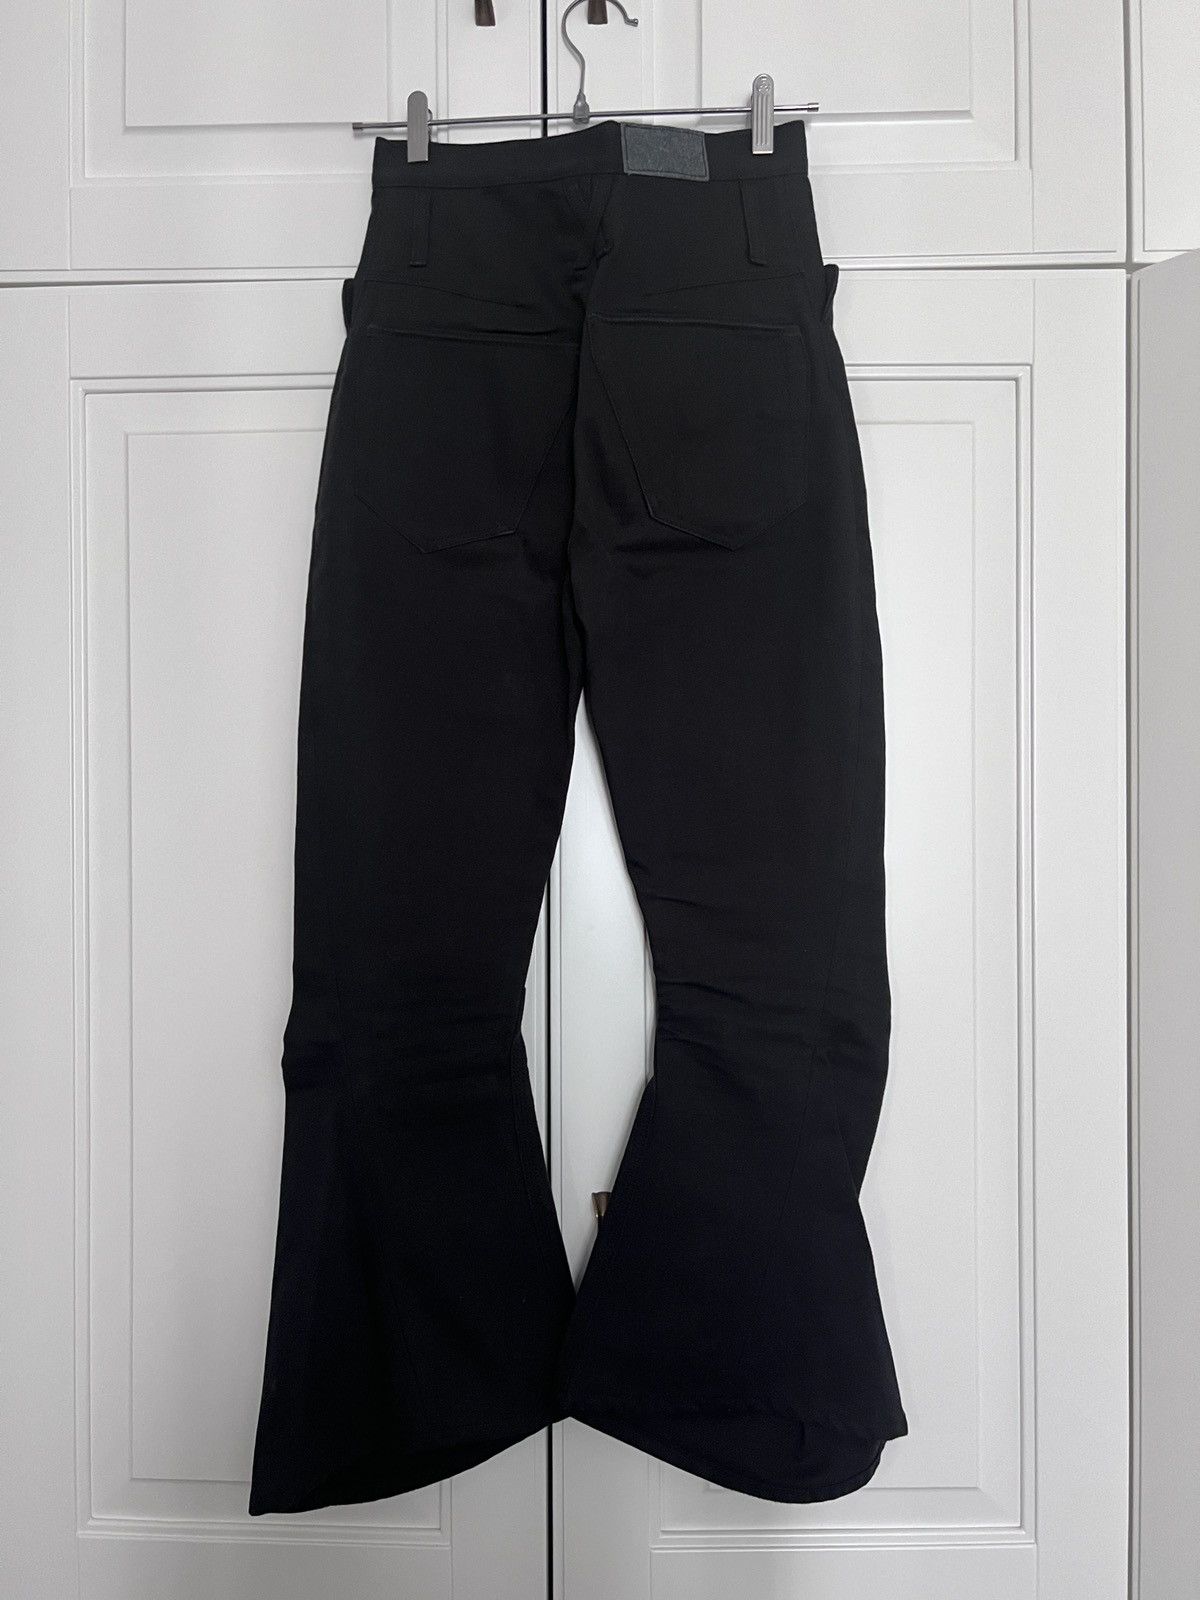 Kozaburo 3D bootcut jeans | Grailed